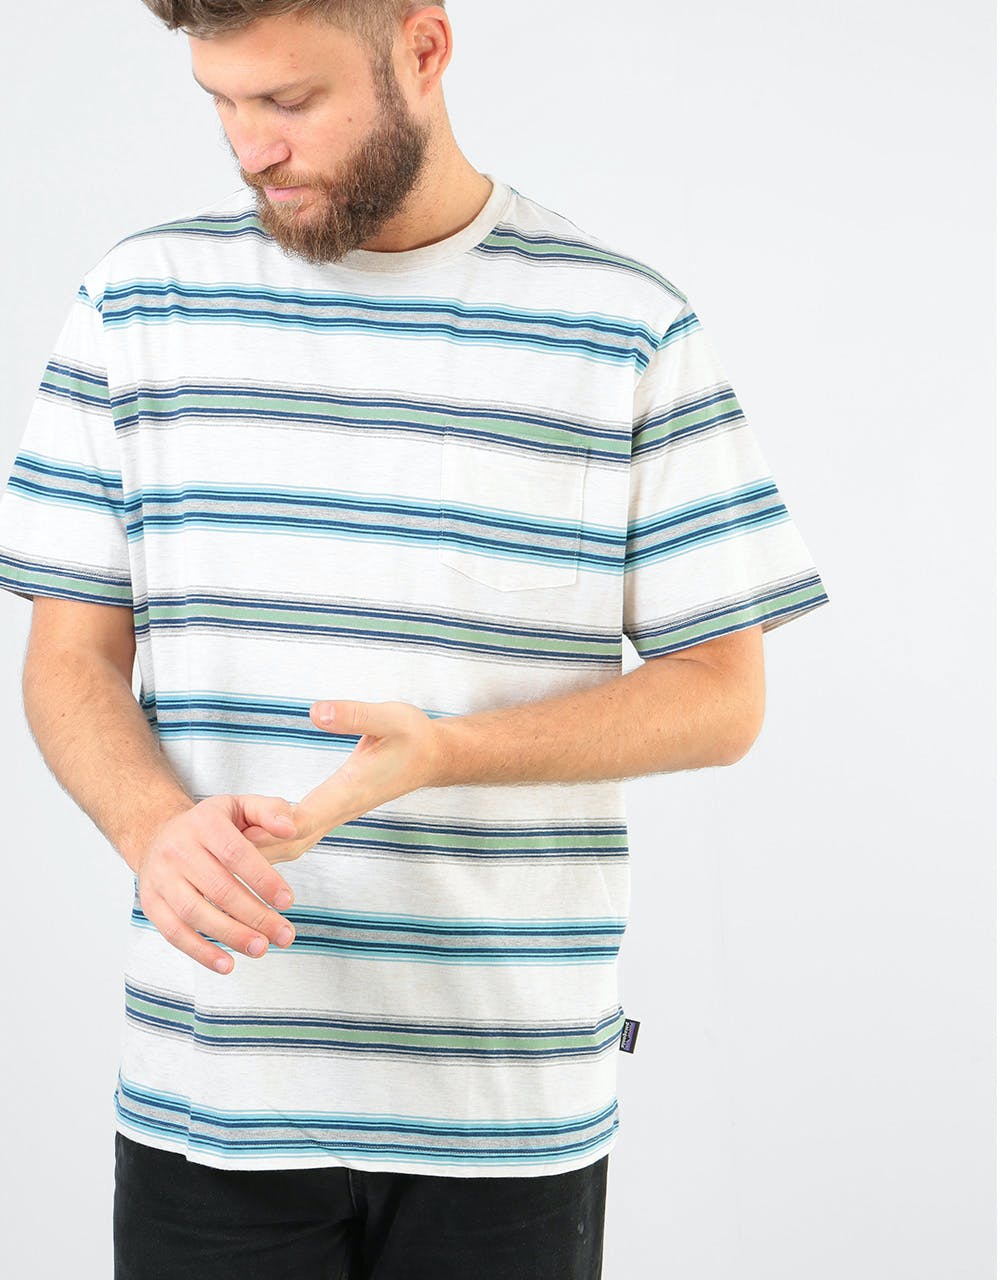 Patagonia Squeaky Clean Pocket T-Shirt - Tarkine Stripe: Pelican